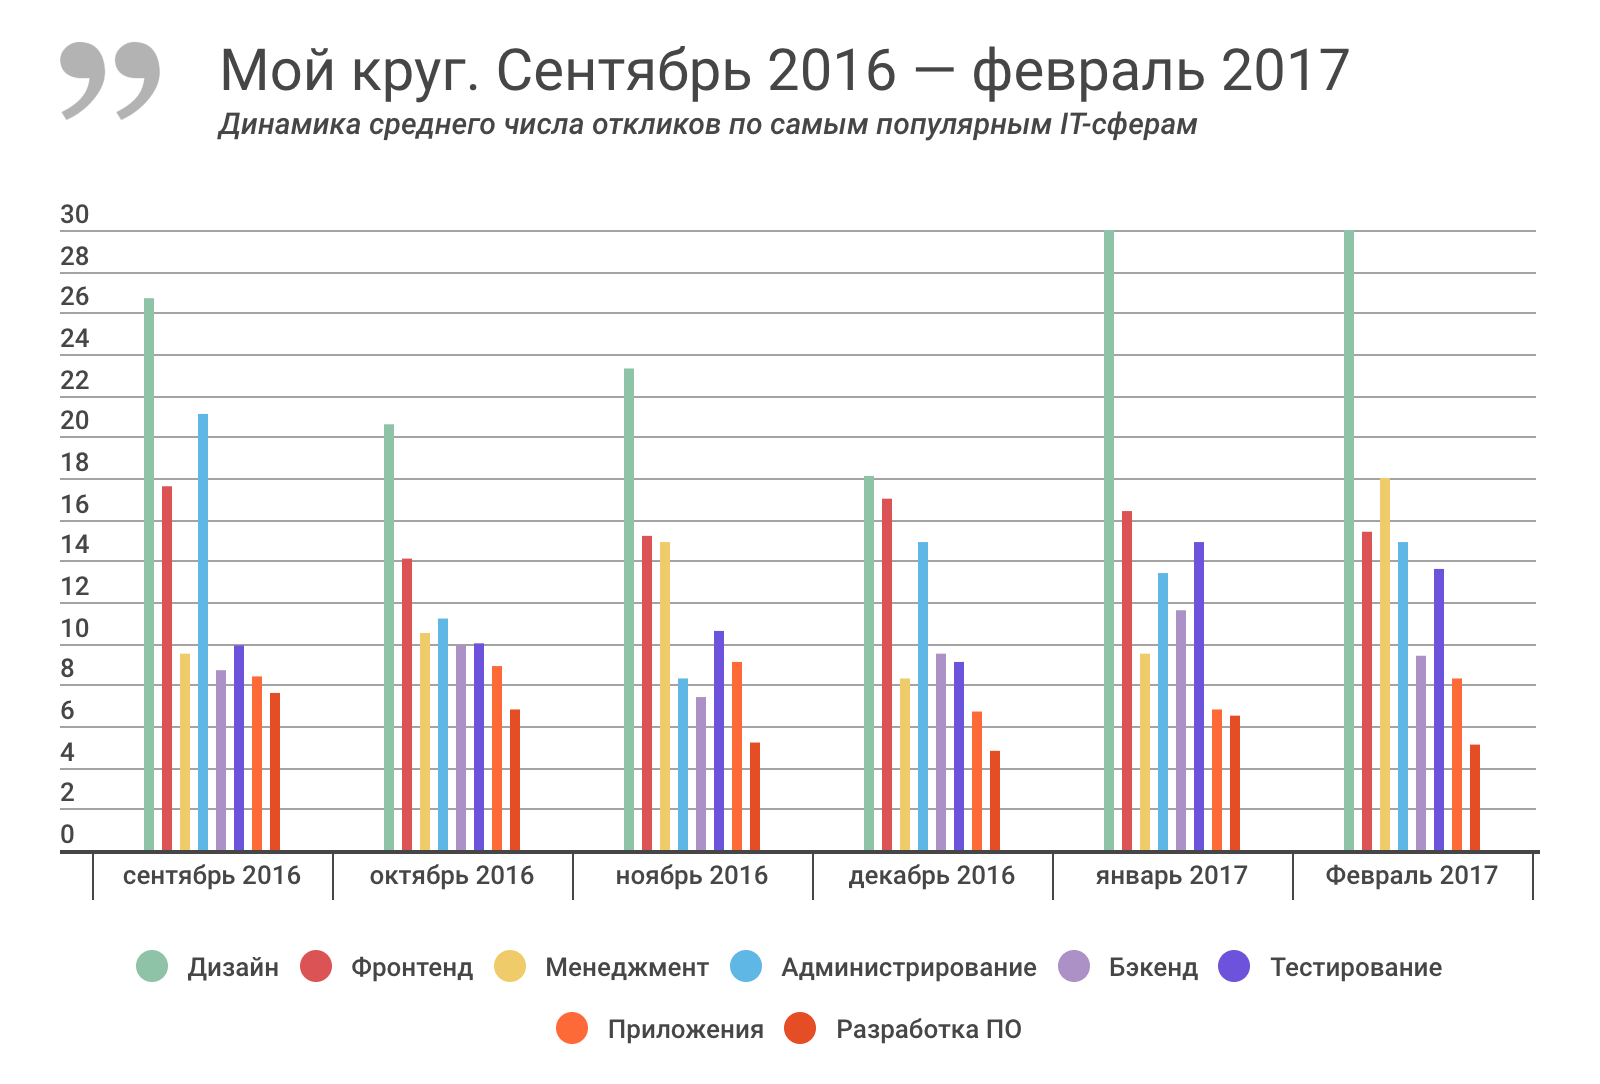 Отчет о результатах «Моего круга» за февраль 2017 и самые популярные вакансии месяца - 1